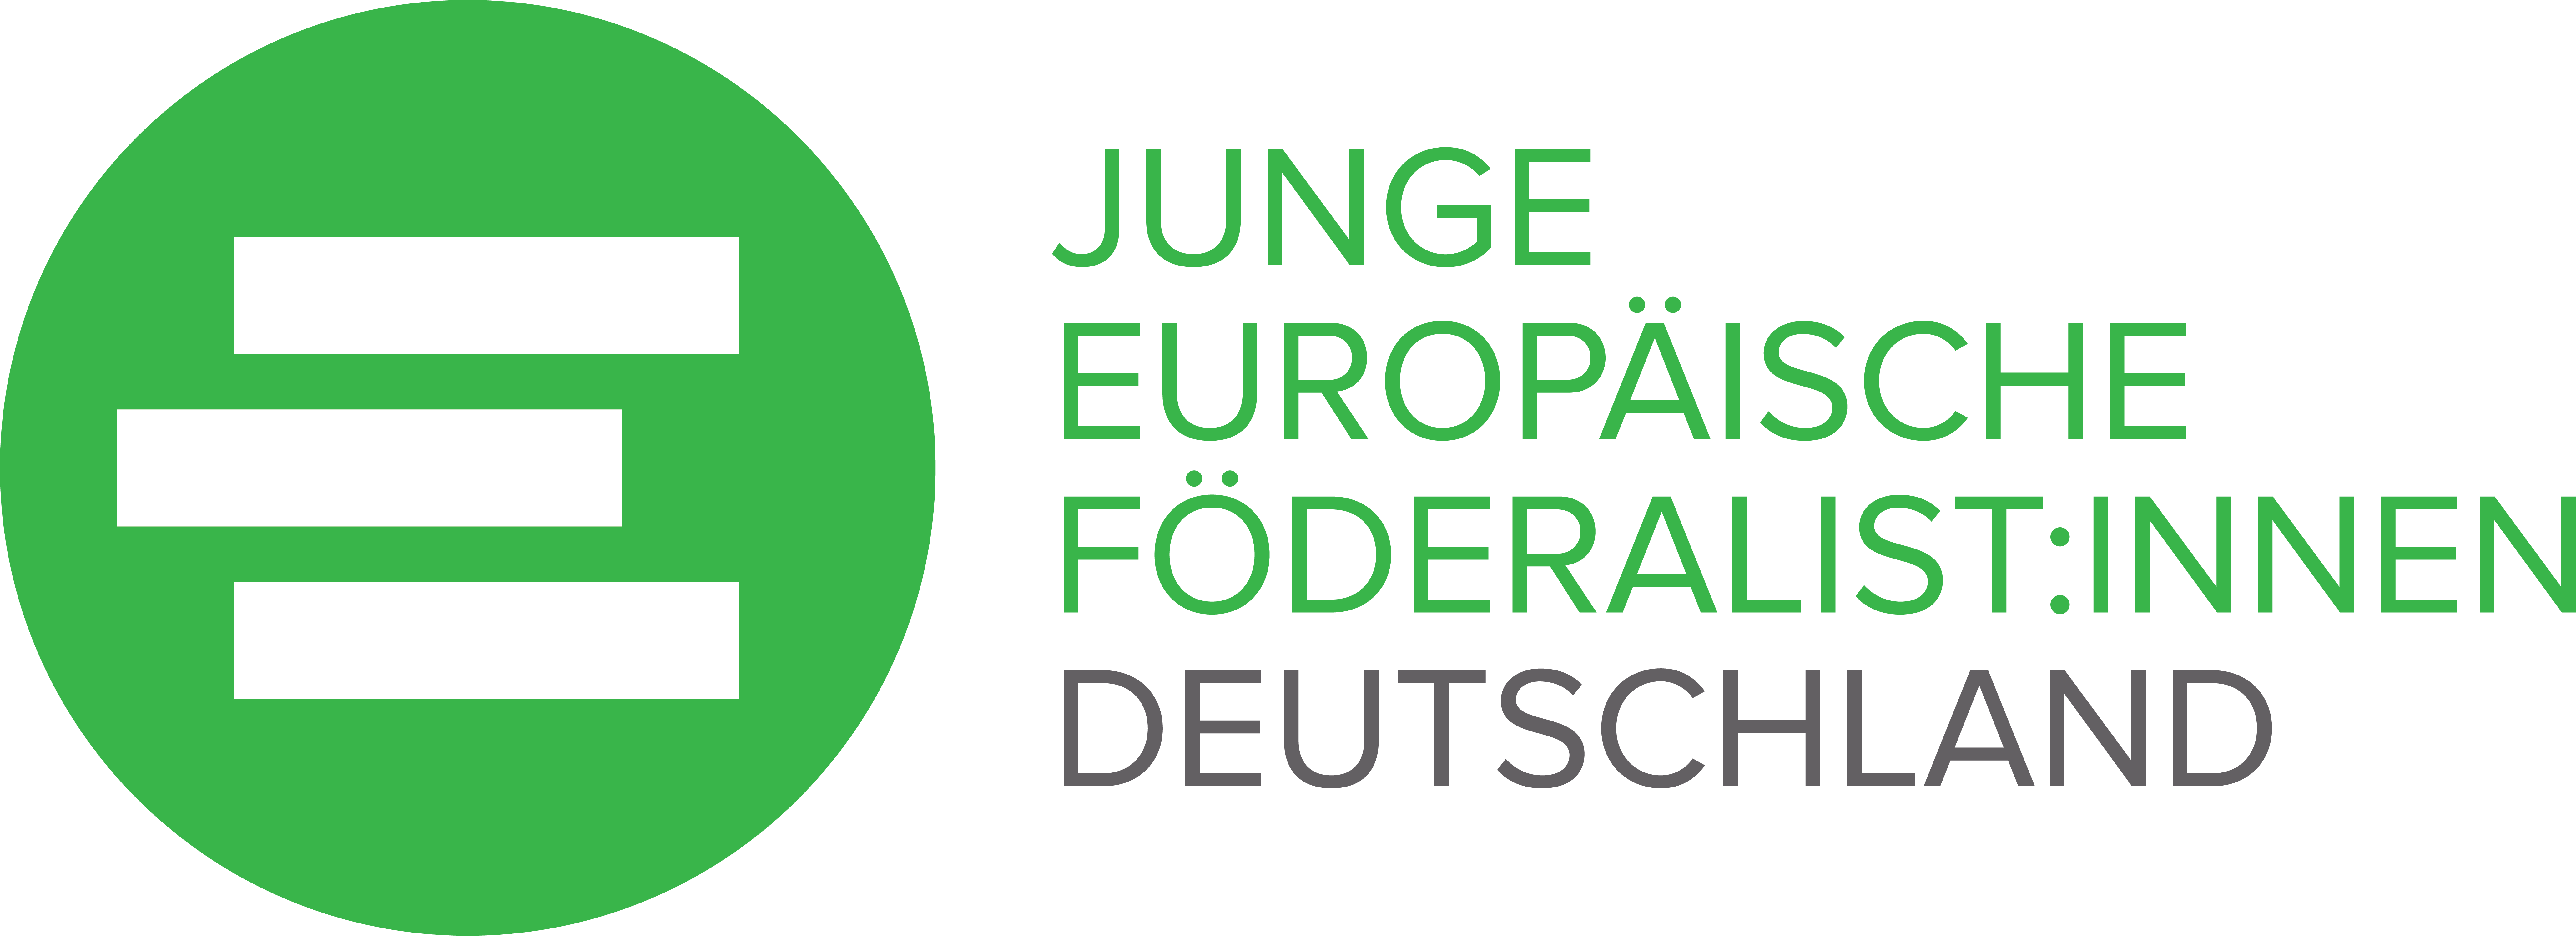 Logo Junge Europäische Föderalist:innen